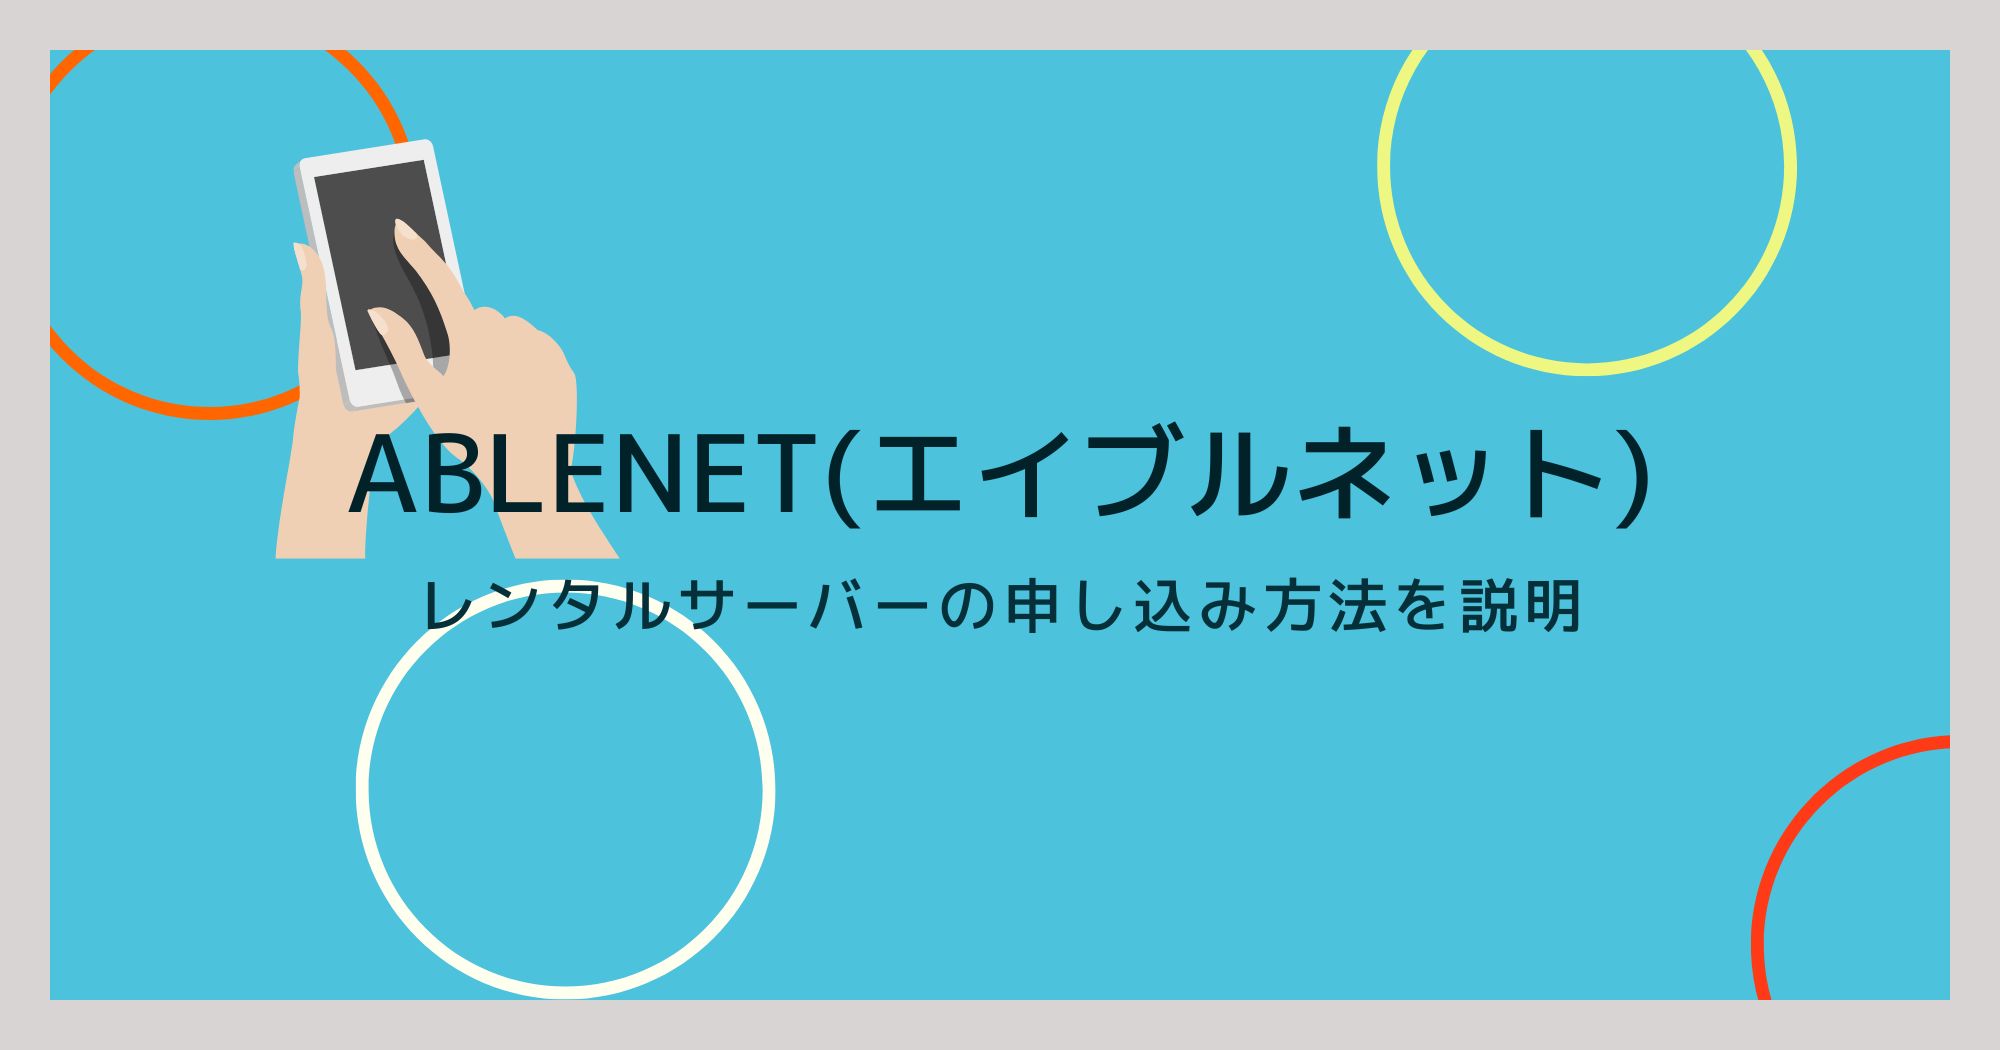 ABLENETのレンタルサーバー申し込み方法を画像を使って説明！